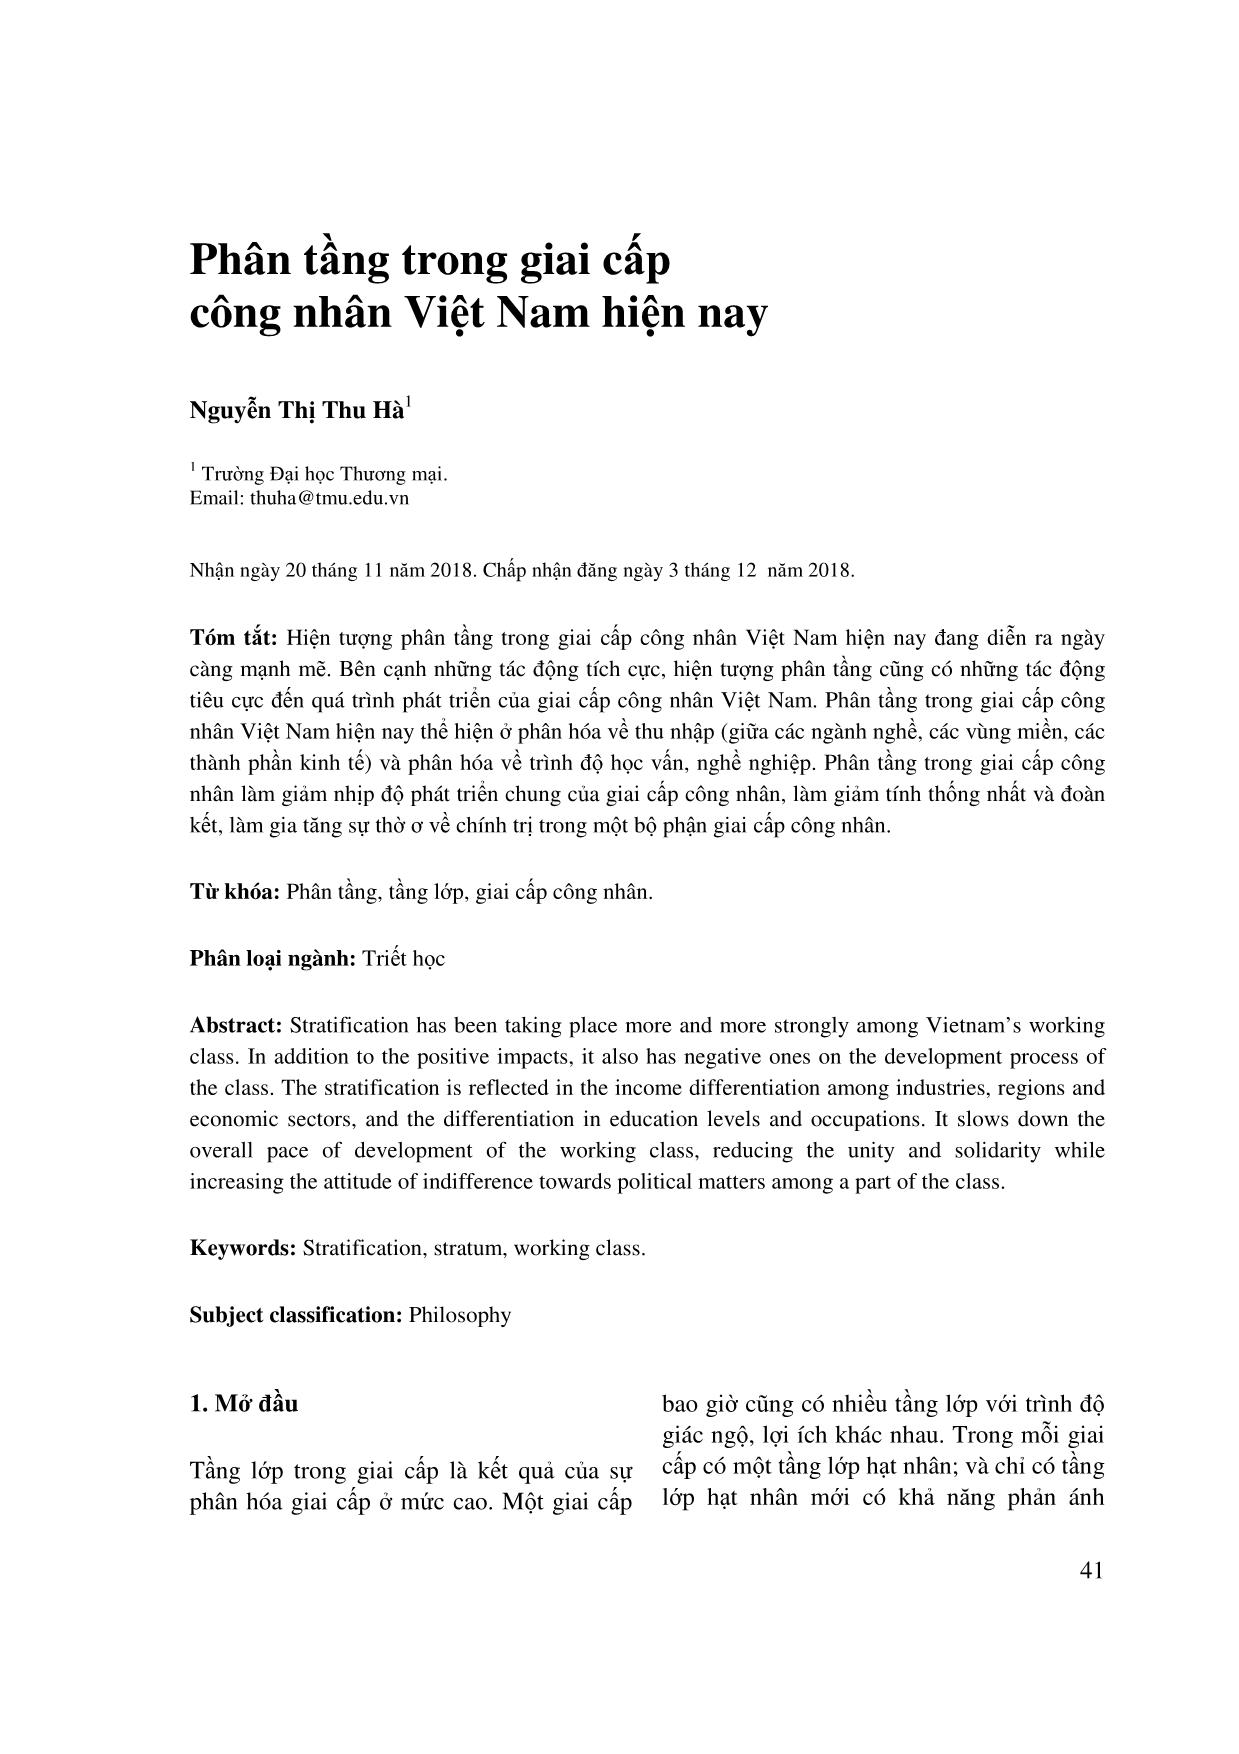 Phân tầng trong giai cấp công nhân Việt Nam hiện nay trang 1